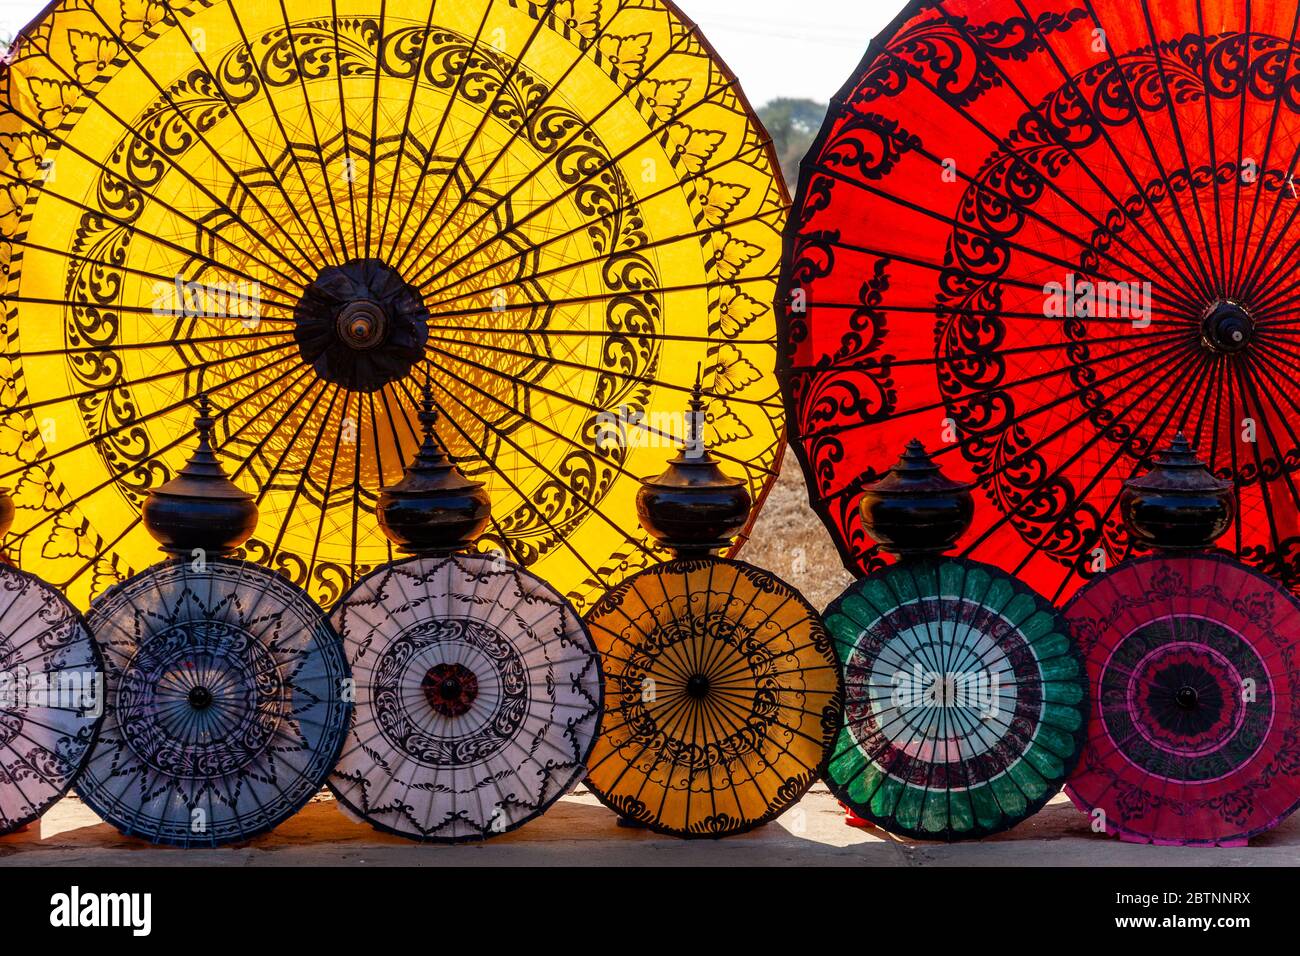 Souvenir Parasols For Sale, Bagan, Mandalay Region, Myanmar. Stock Photo